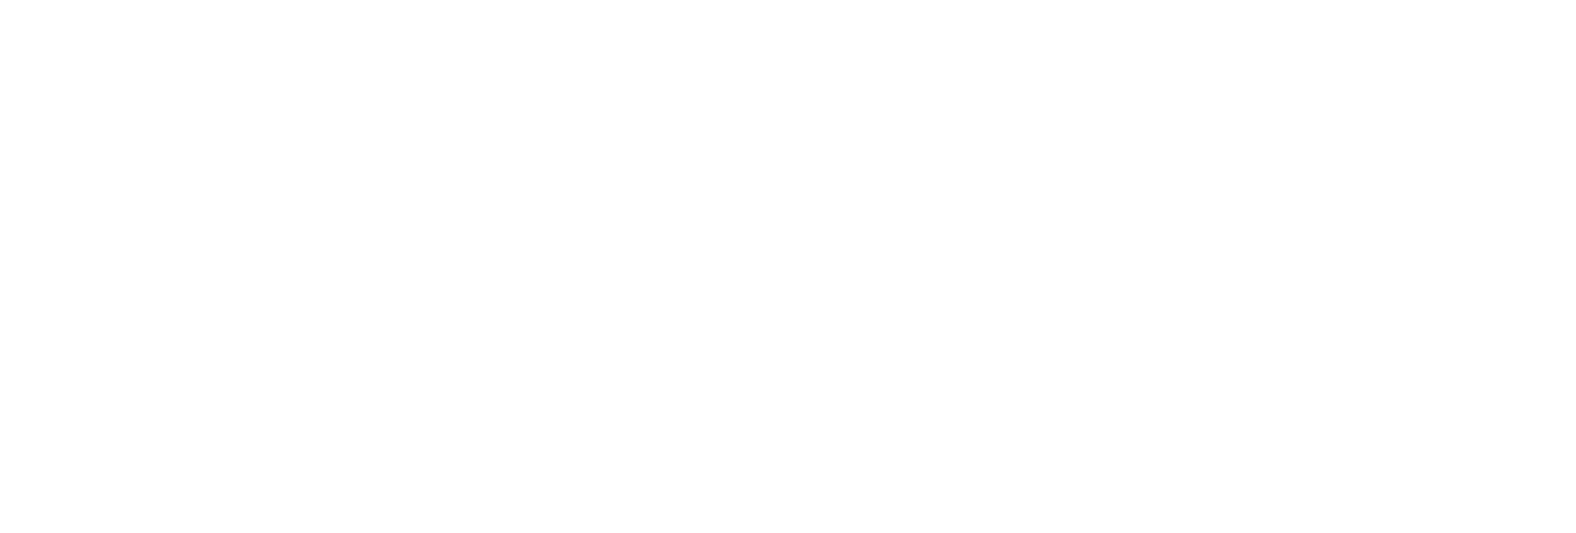 FinWise Bancorp logo grand pour les fonds sombres (PNG transparent)